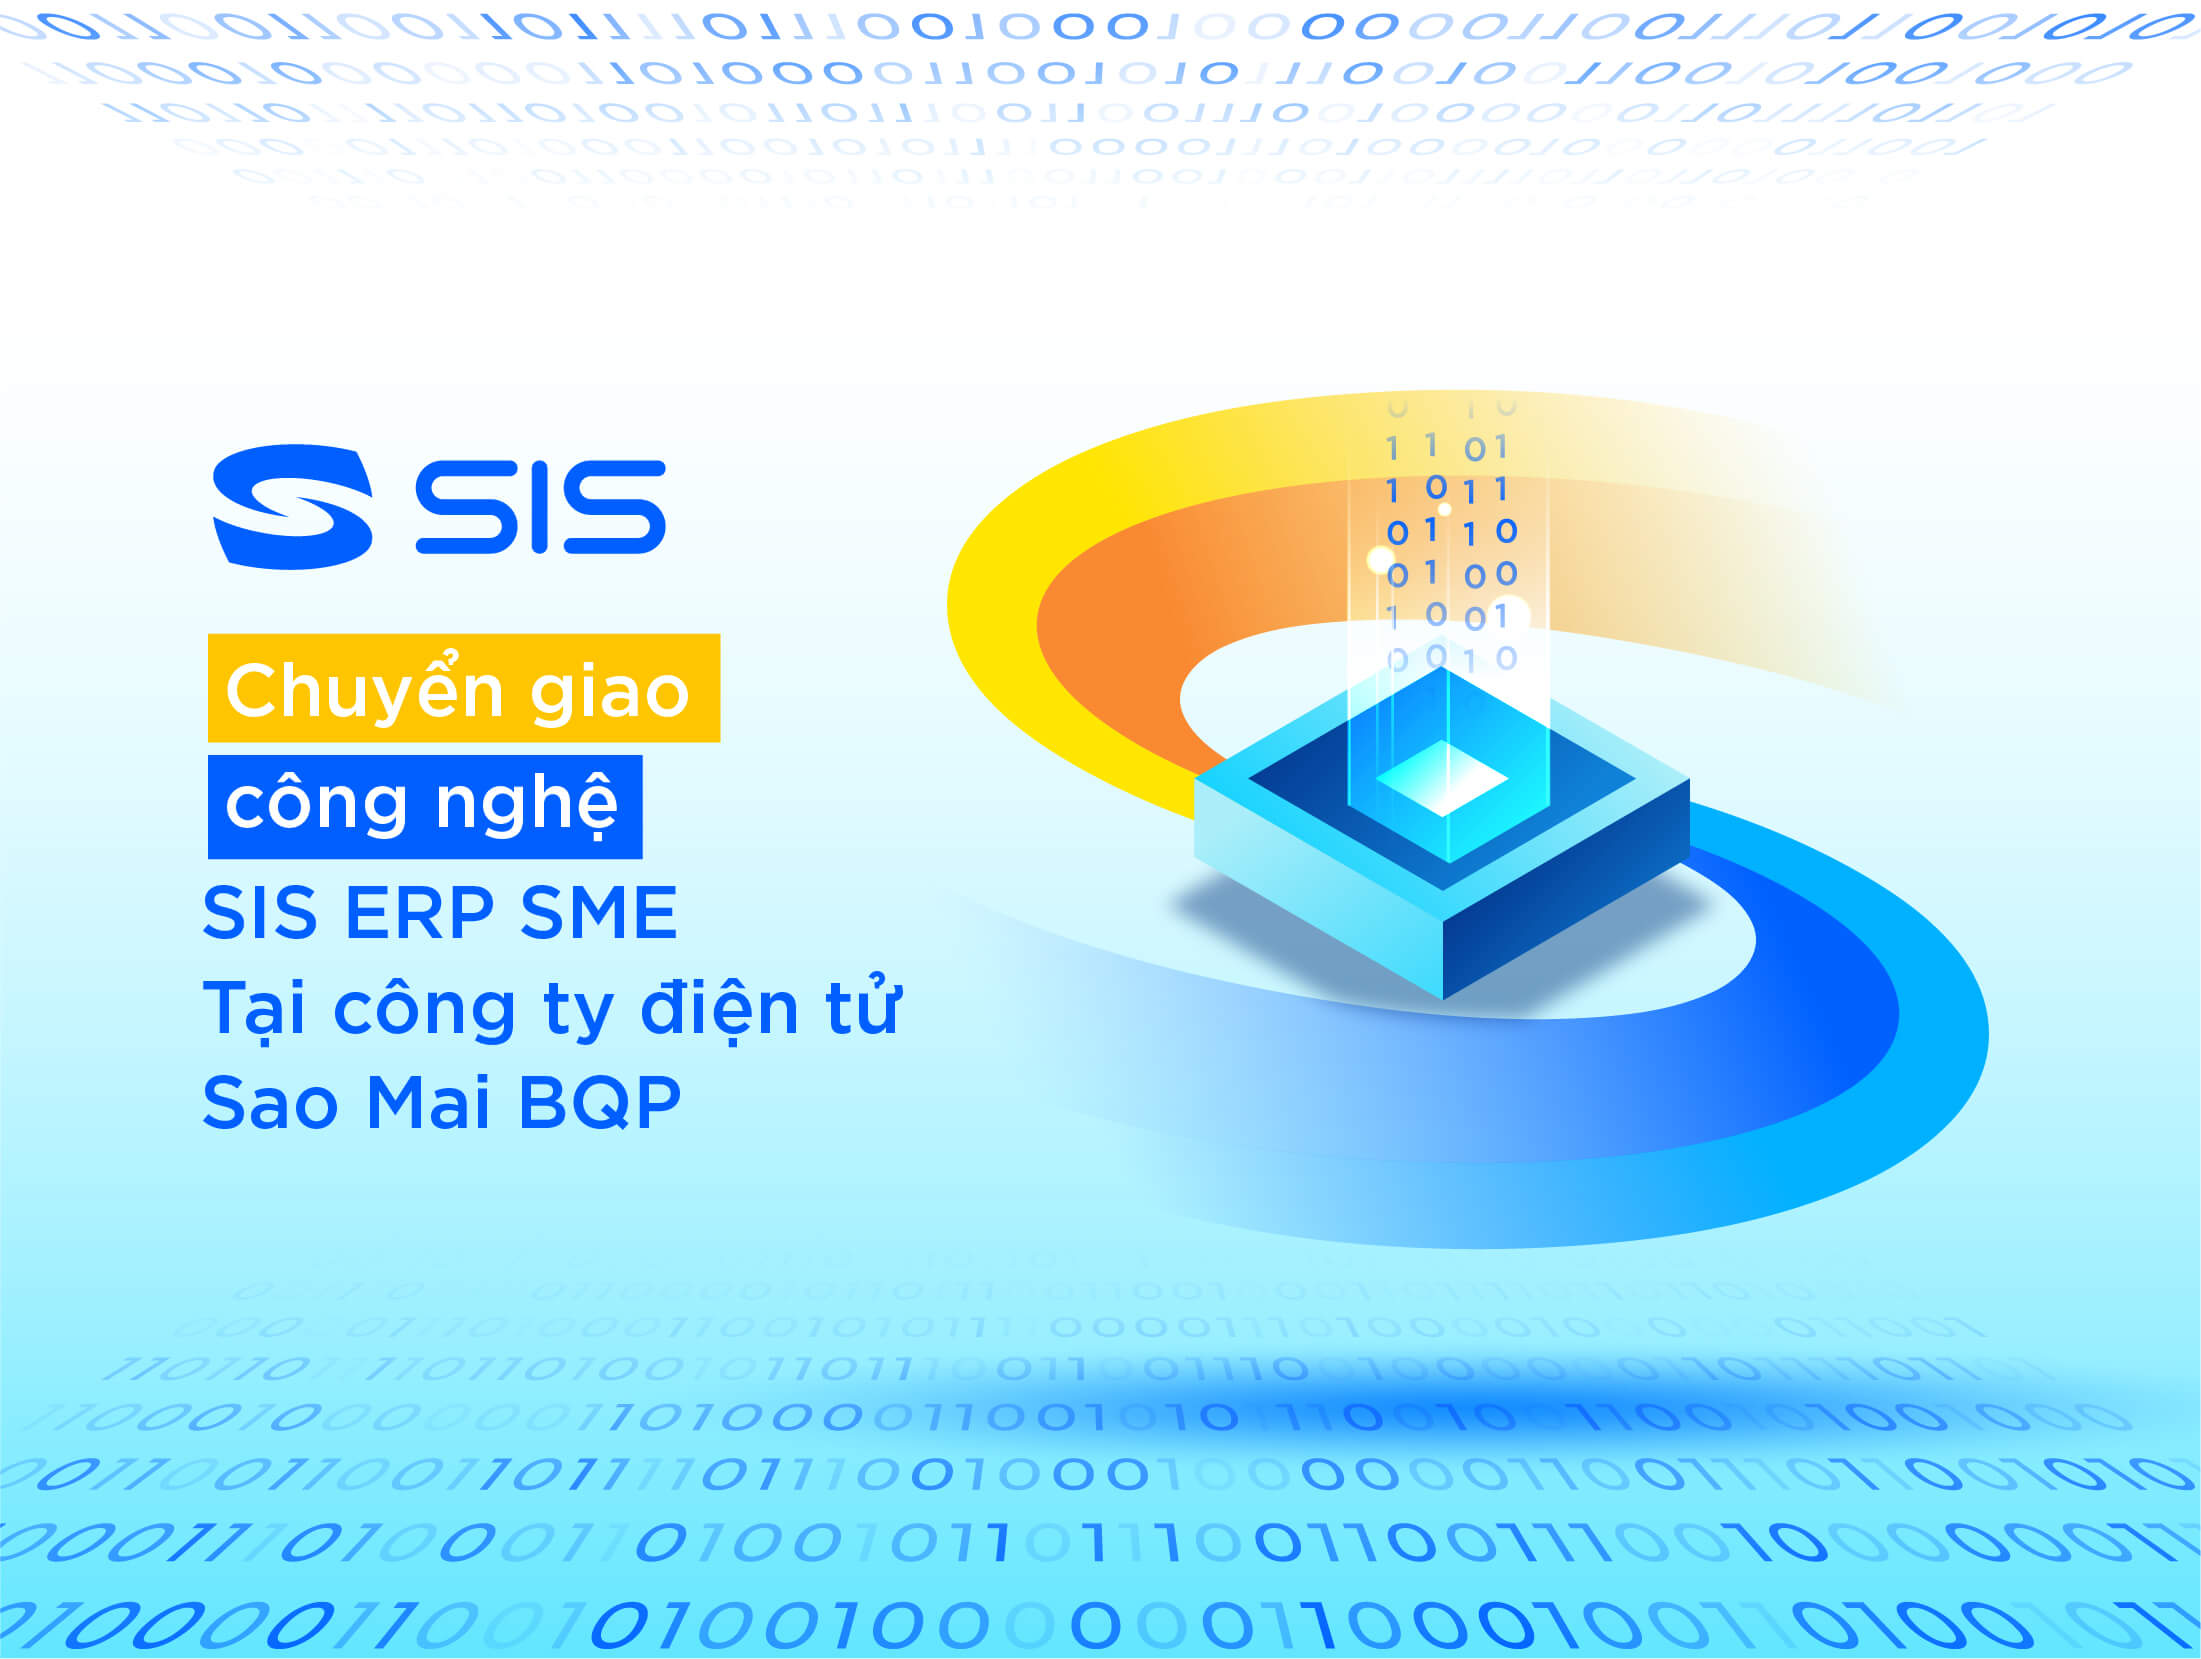 Chuyển giao phần mềm SIS ERP SME tại công ty Điện tử sao mai - BQP